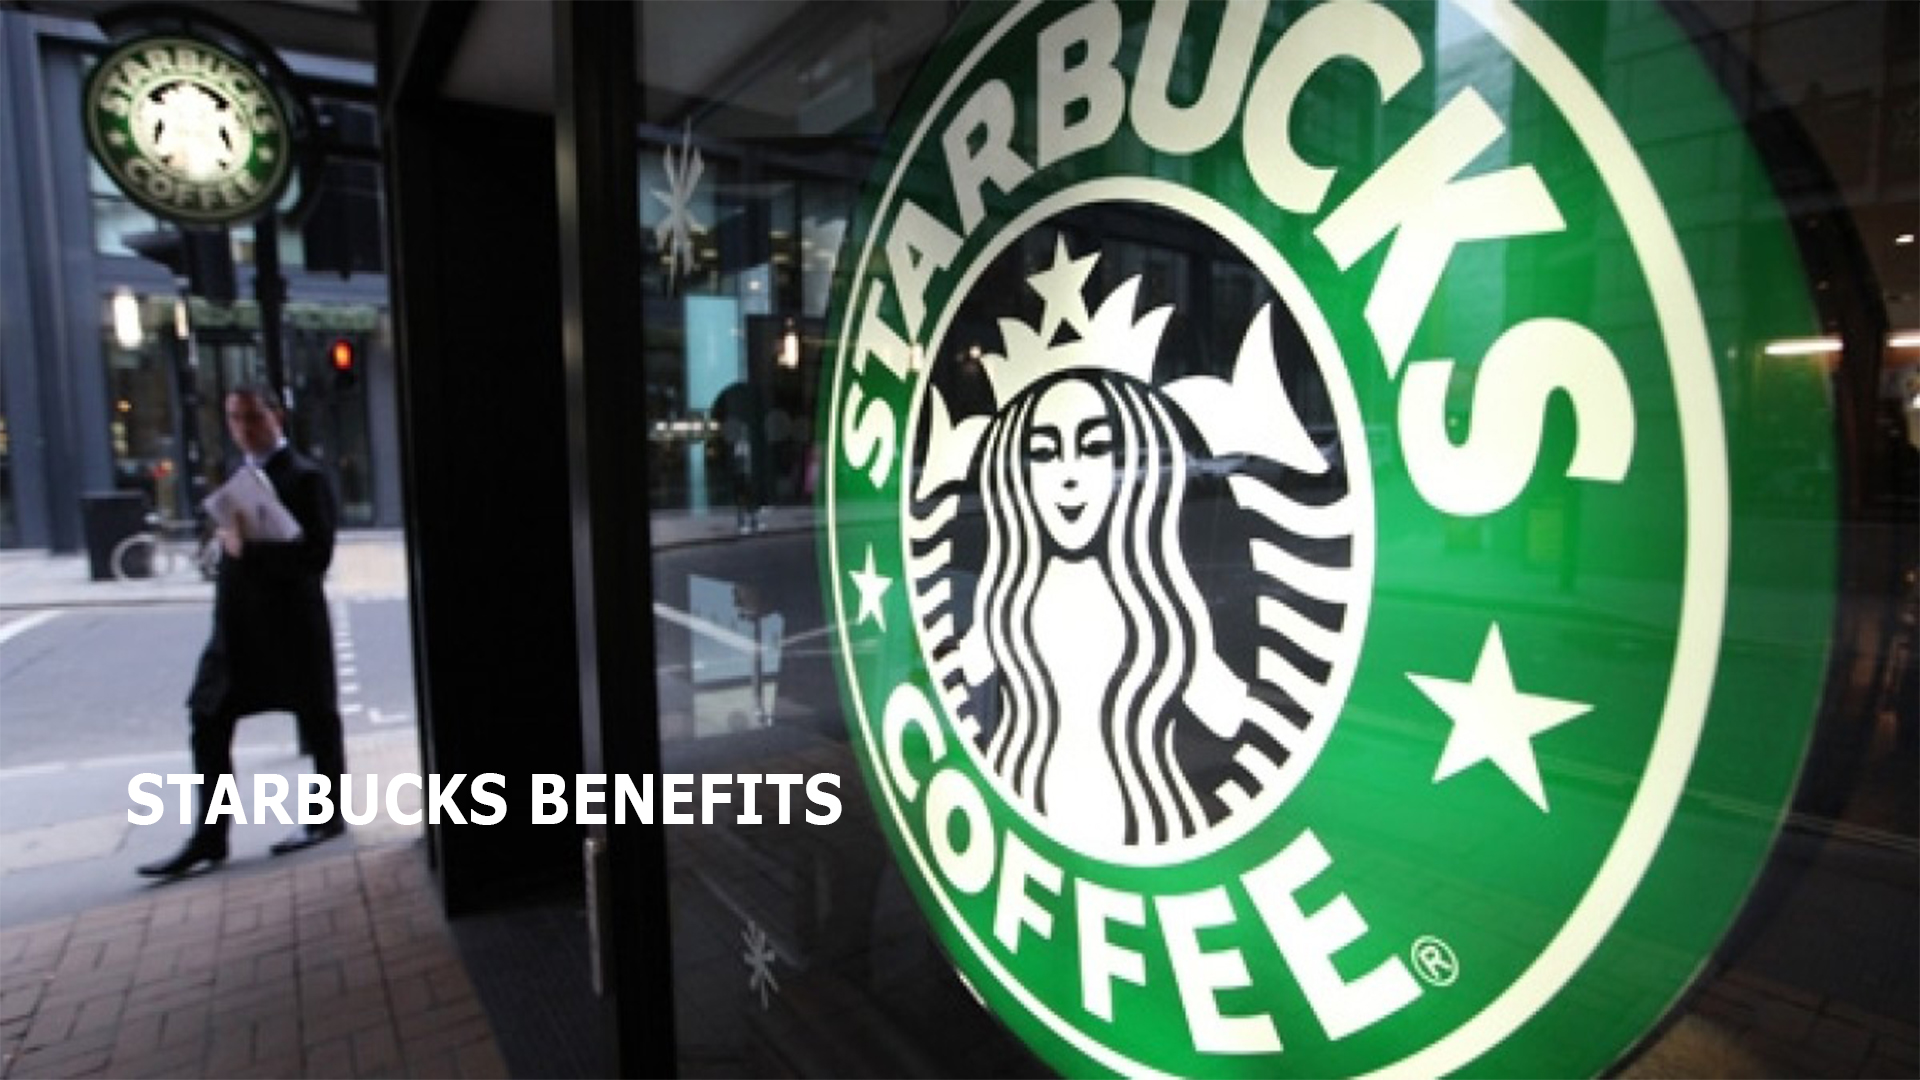 Starbucks Benefits Apply for Starbucks Job Online Makeoverarena